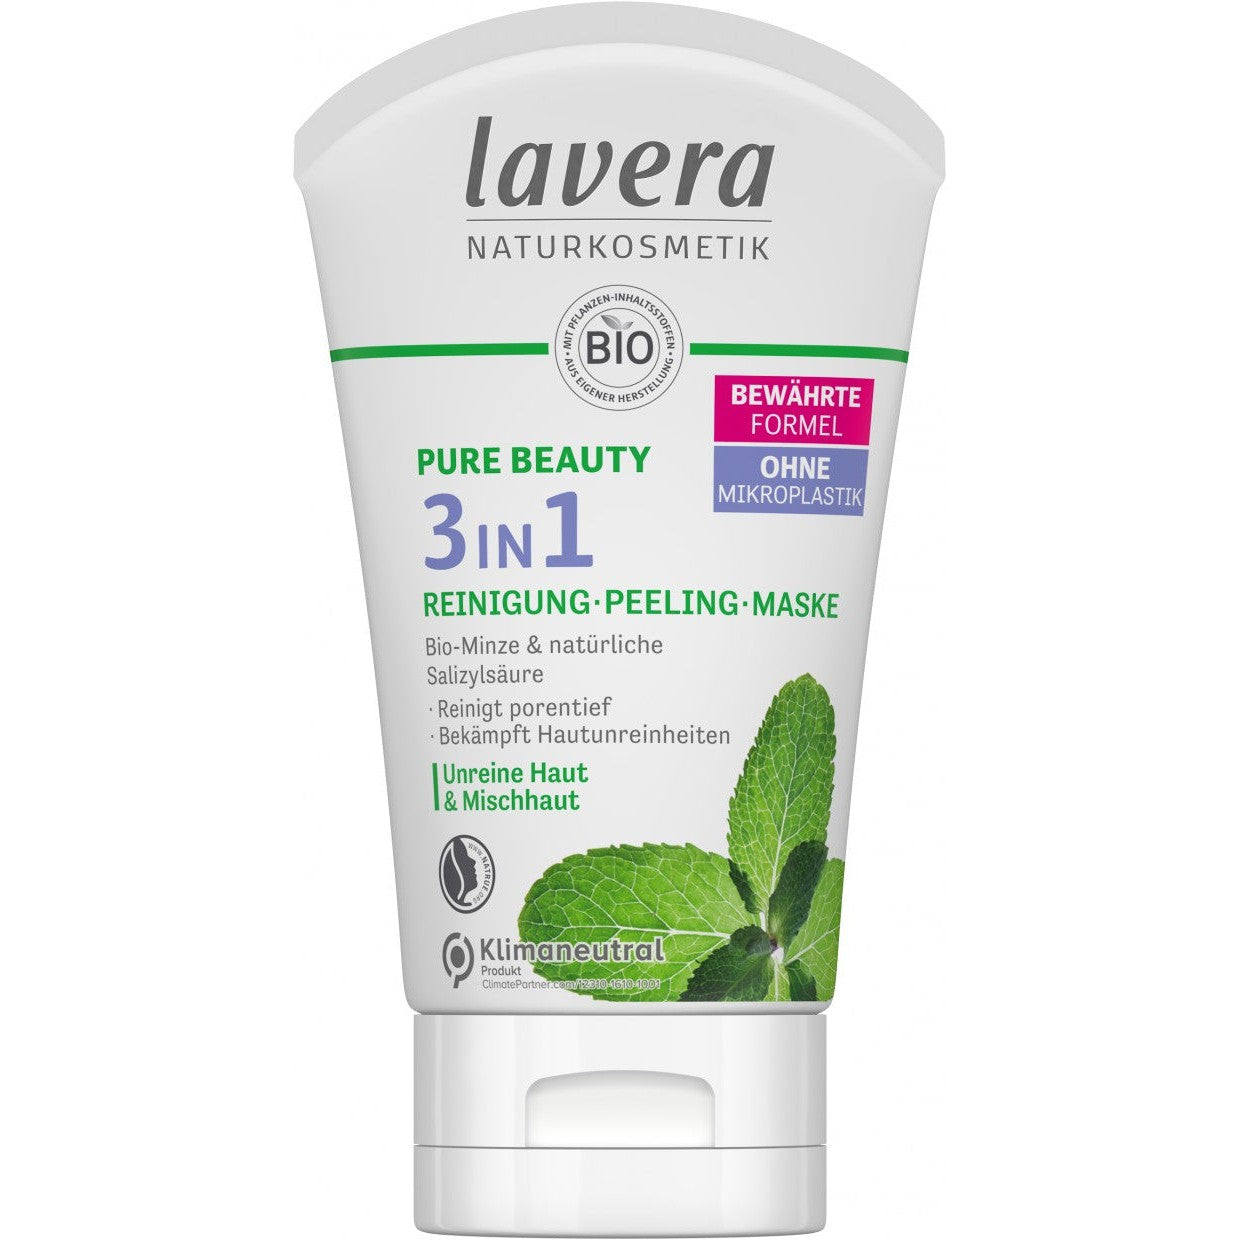 Lavera Pure Beauty 3in1 kasvojen puhdistustuote